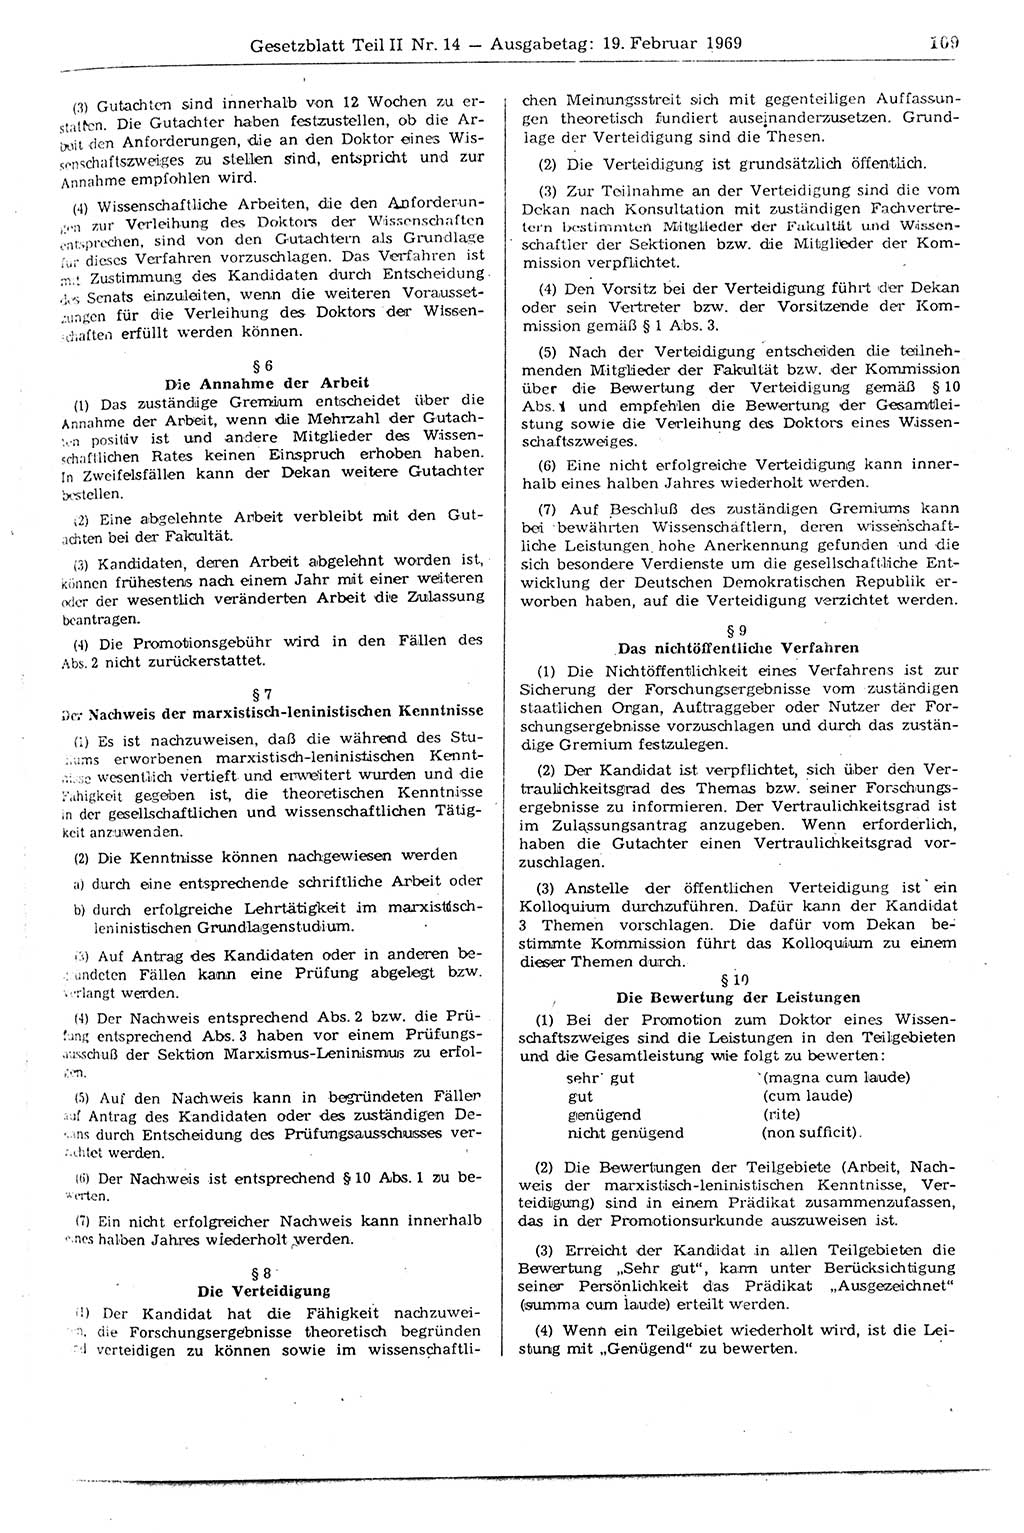 Gesetzblatt (GBl.) der Deutschen Demokratischen Republik (DDR) Teil ⅠⅠ 1969, Seite 109 (GBl. DDR ⅠⅠ 1969, S. 109)